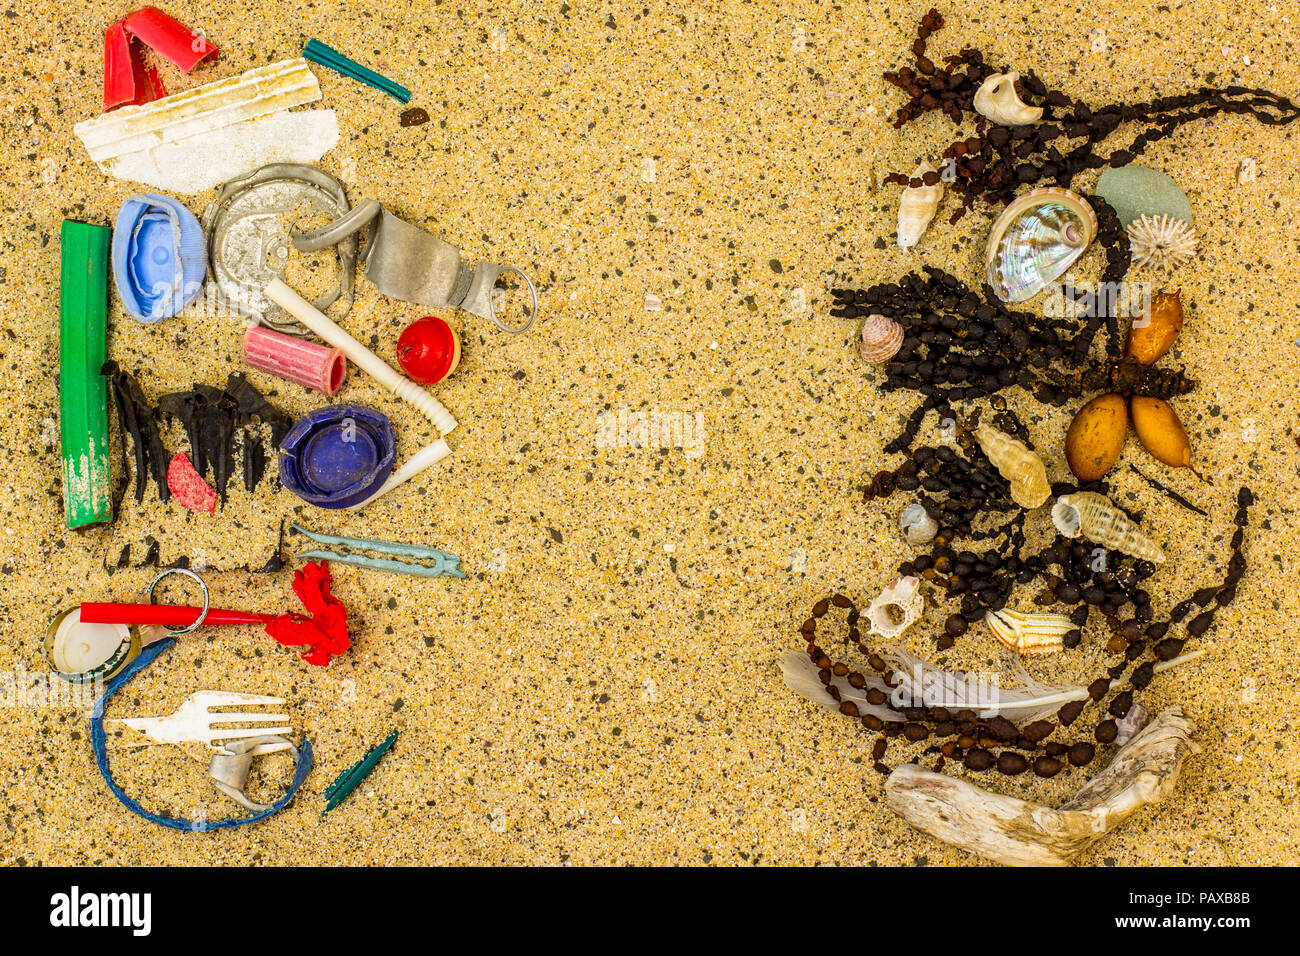 Véritable pollution plastique trouvés sur beach séparés et triés par les algues et les coquillages de la plage où il a été trouvé, l'espace pour le texte Banque D'Images